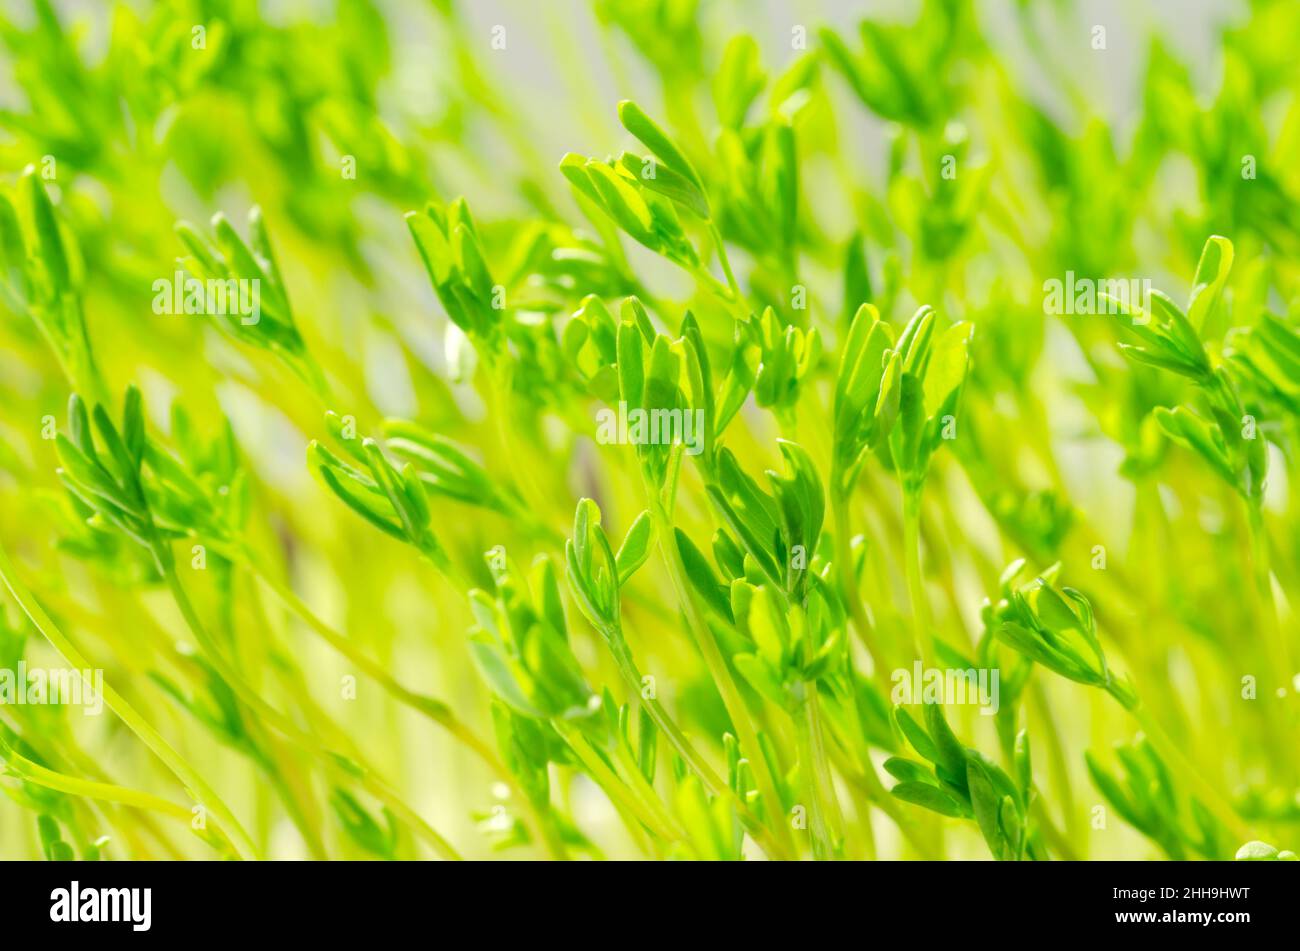 Puy lentilles pousses, macro photo gros plan.Le Puy lentilles microverts.Jeunes plantes, plantules de lentilles vertes françaises, lentilles germées esculenta puyensis. Banque D'Images